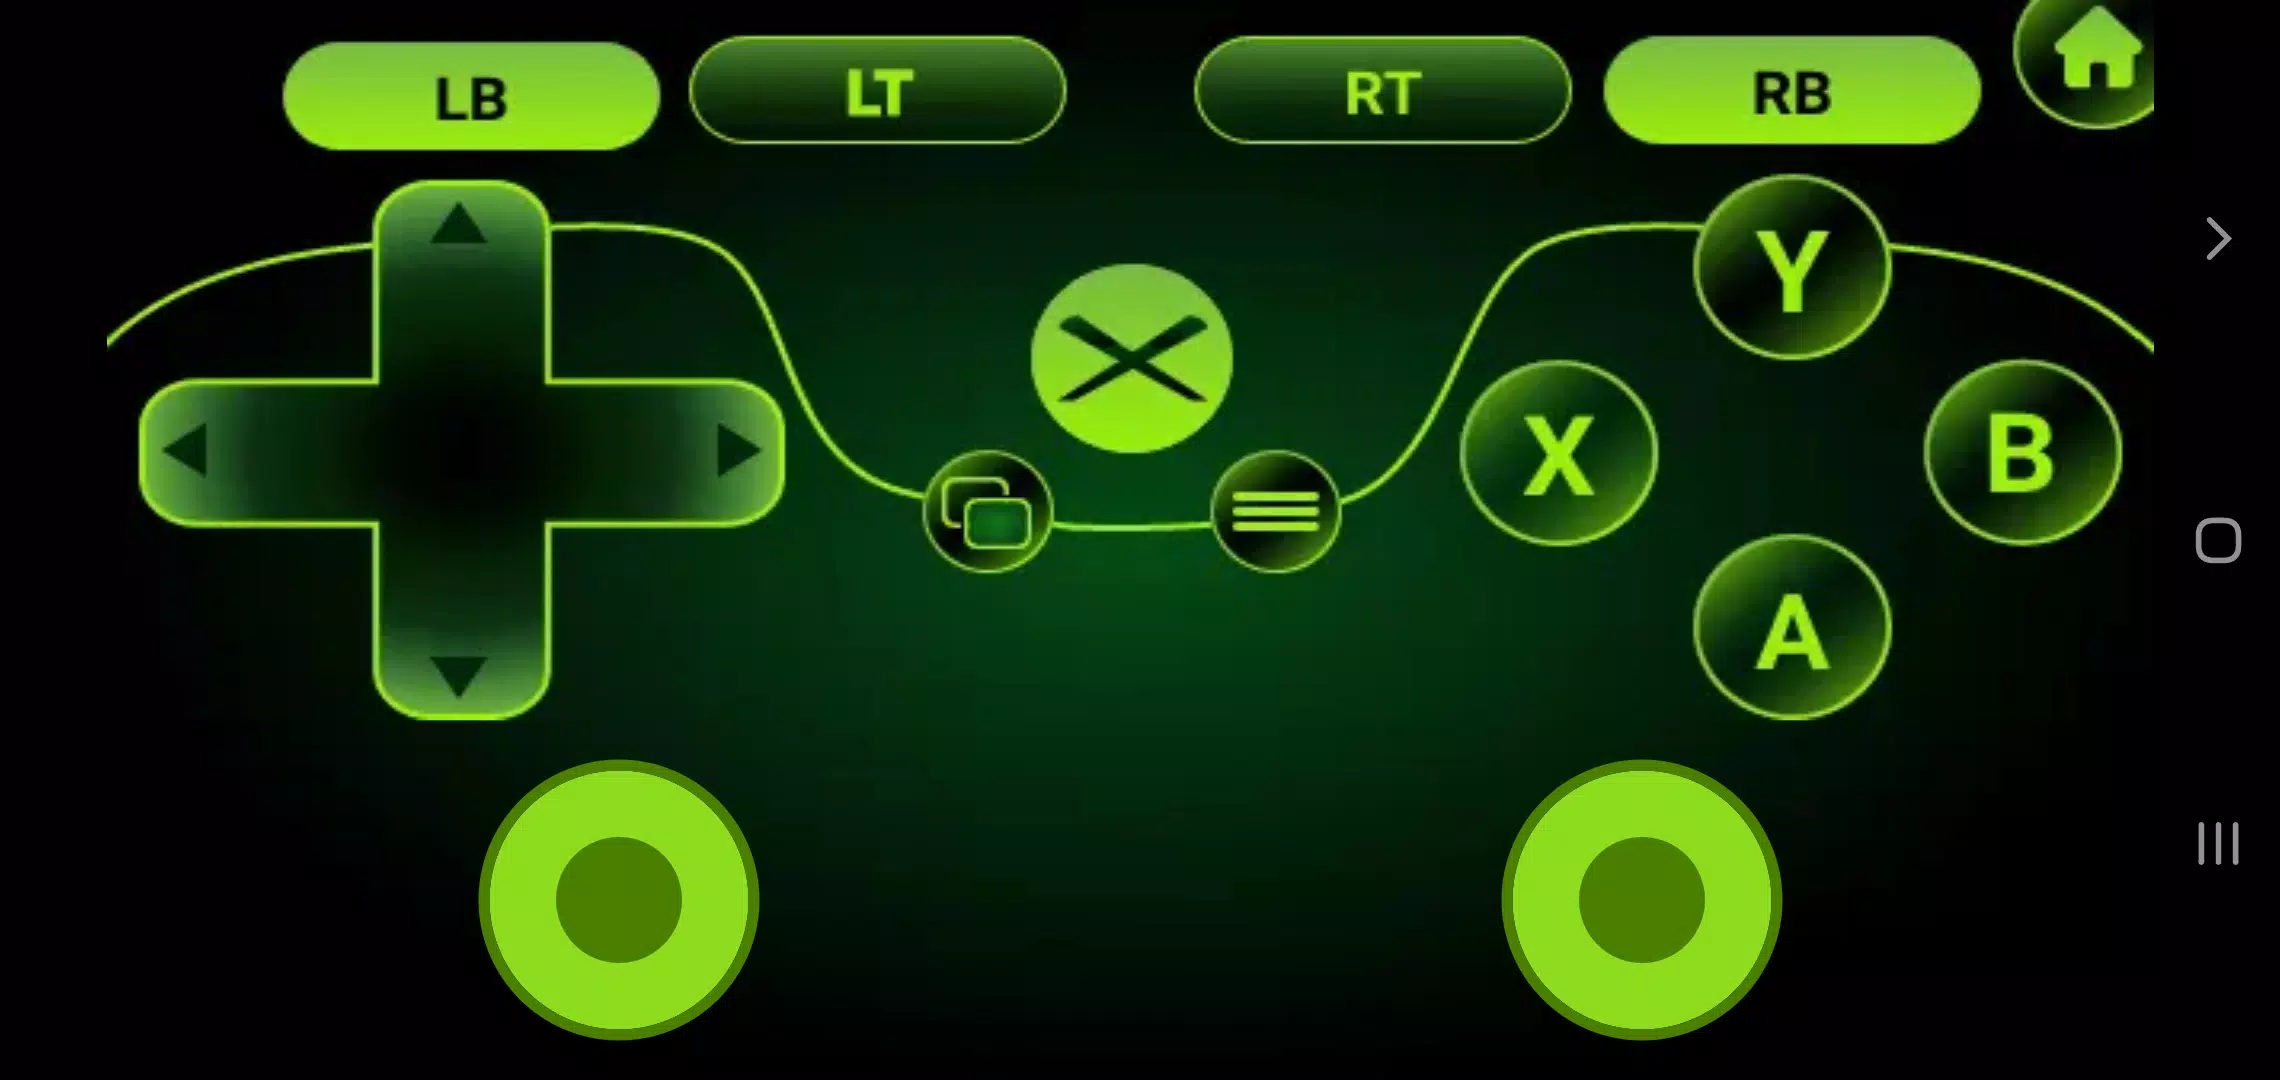 Descarga de APK de Controller for Xbox One para Android